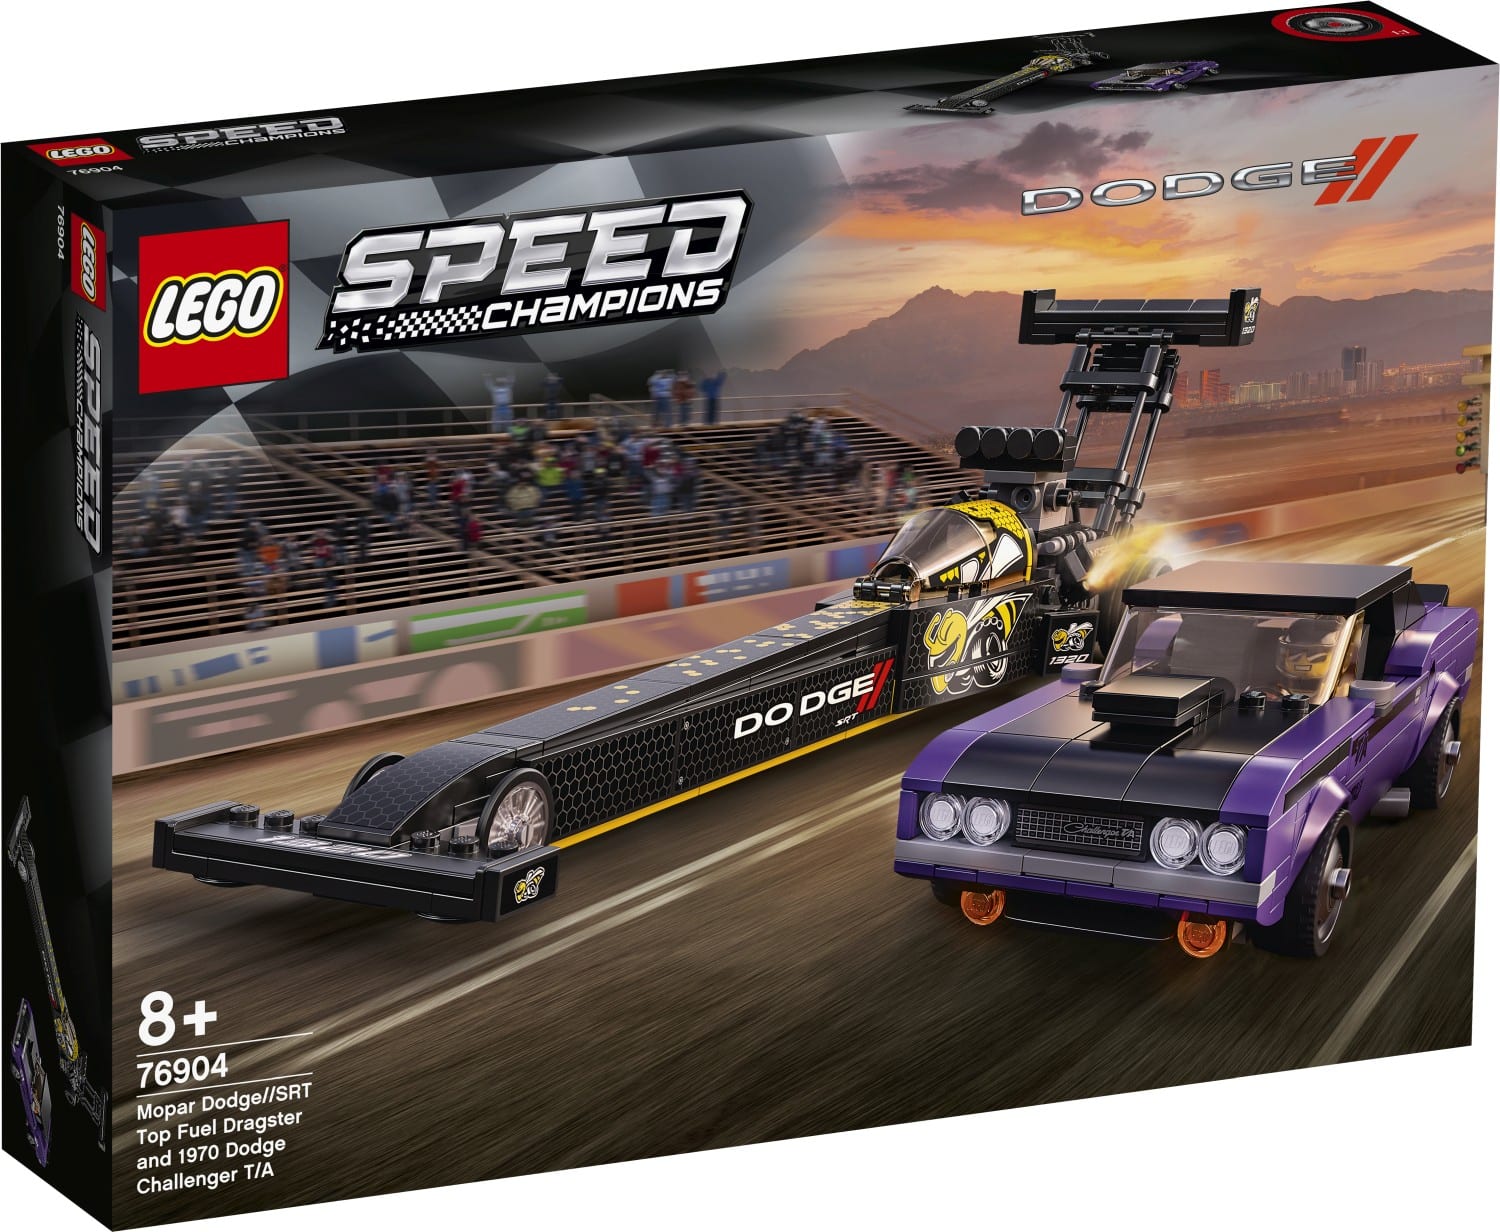 LEGO Speed Champions, svelati i nuovi set set automobilistici per il 2021